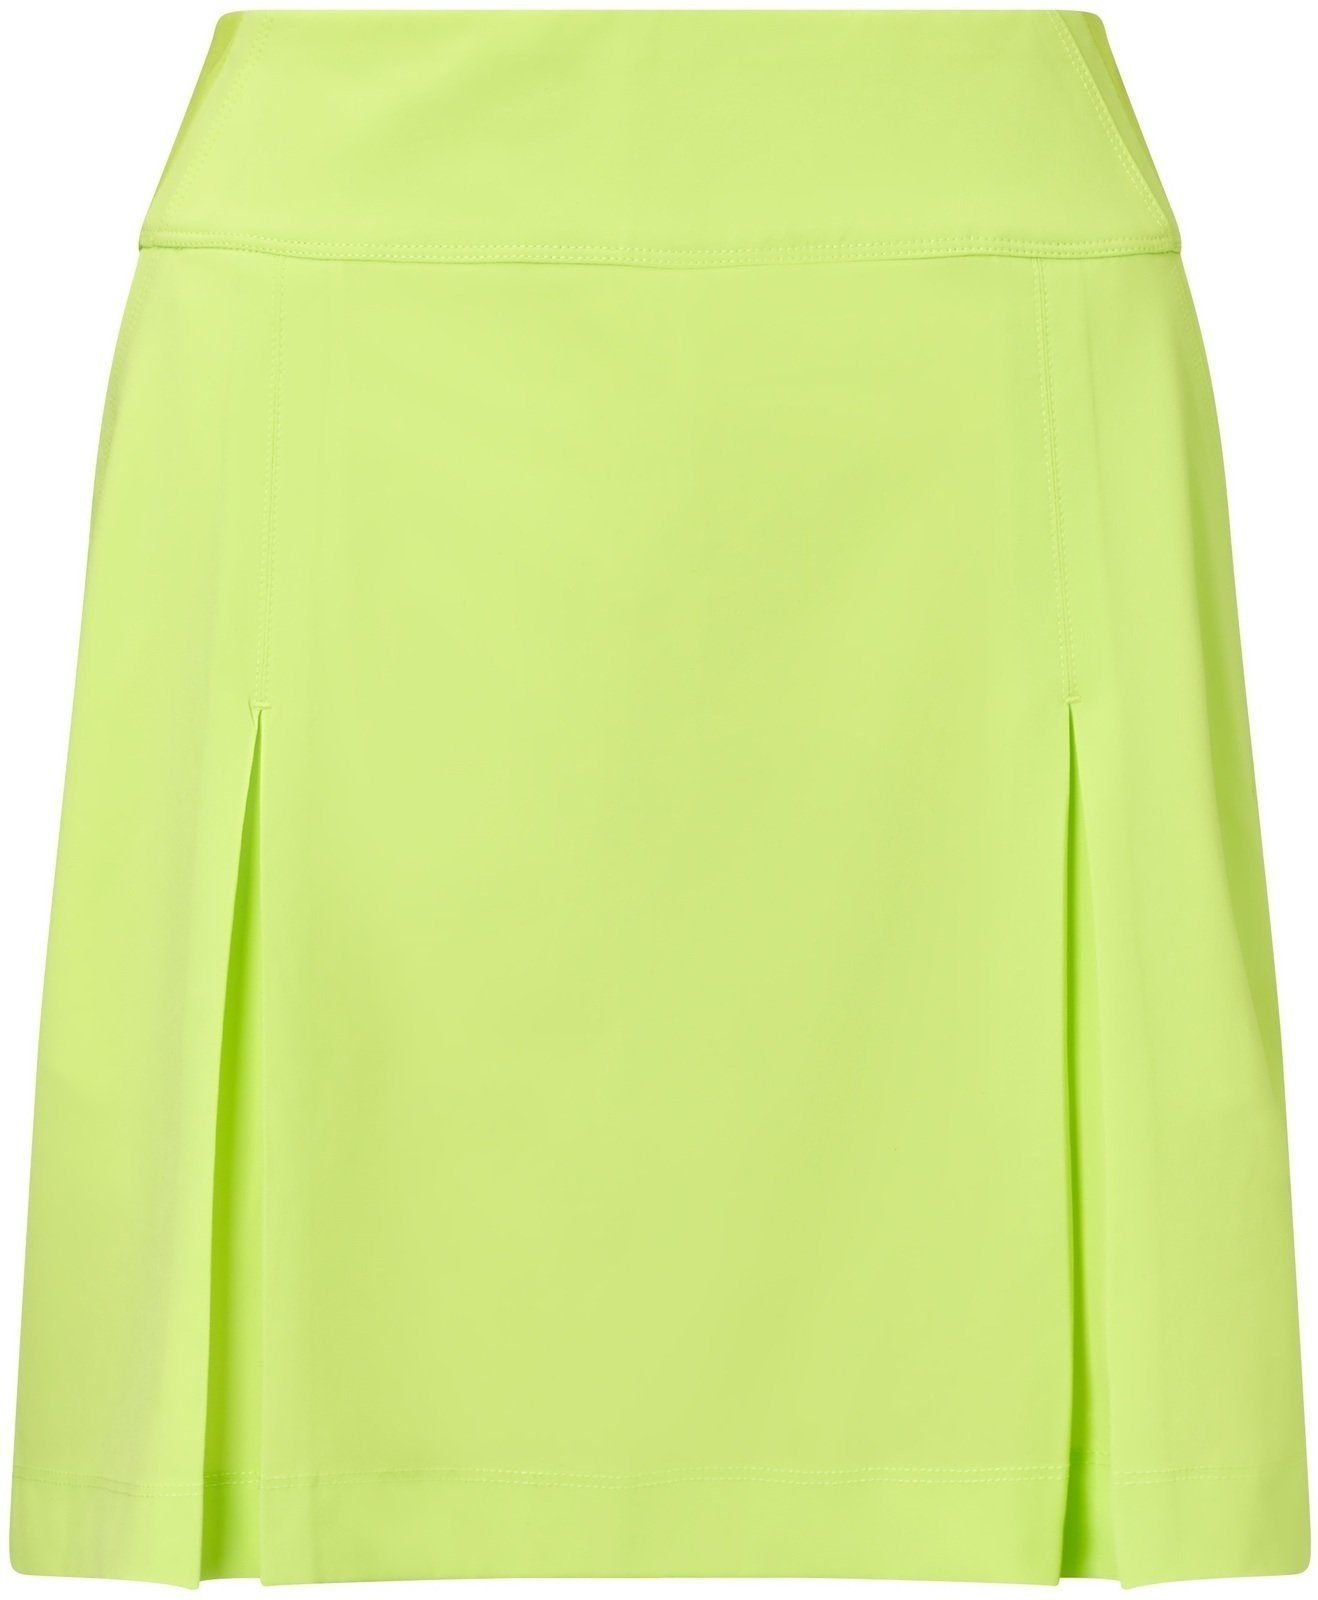 Skirt / Dress Callaway 18 All Day Skort Sharp Green L Womens